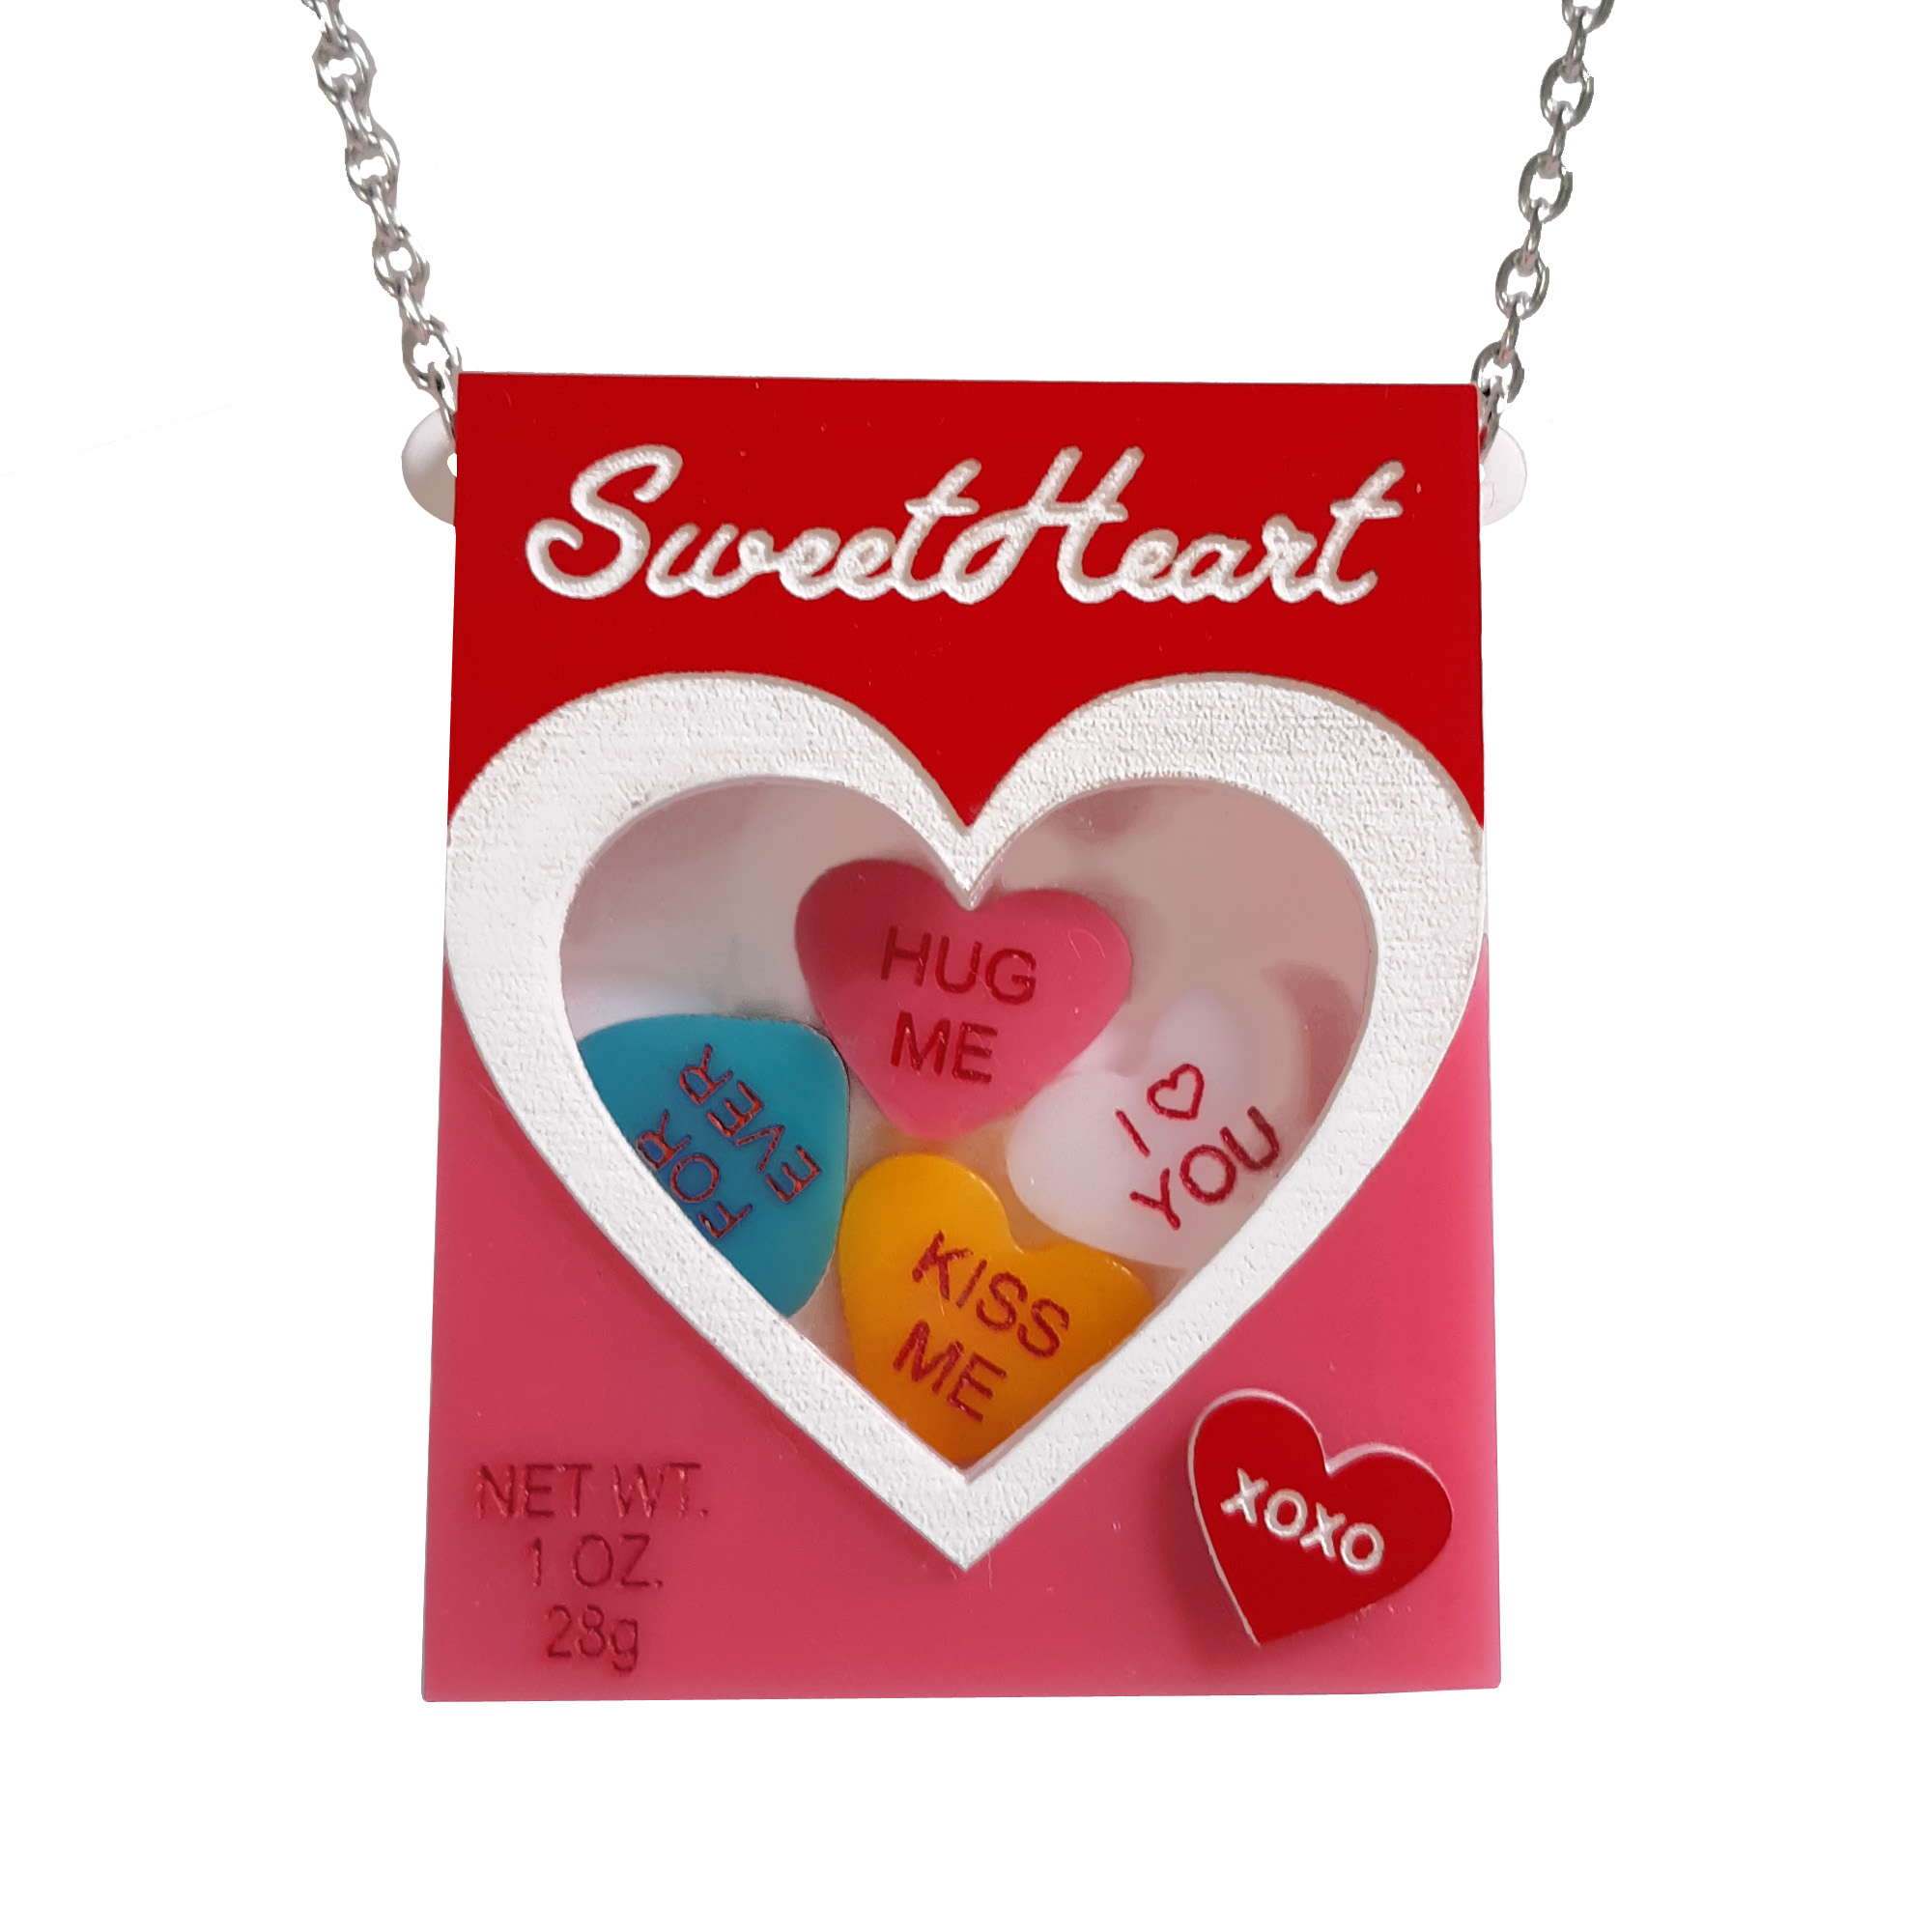 Conversation Heart Statement Necklace Valentines Day – Fatally Feminine  Designs